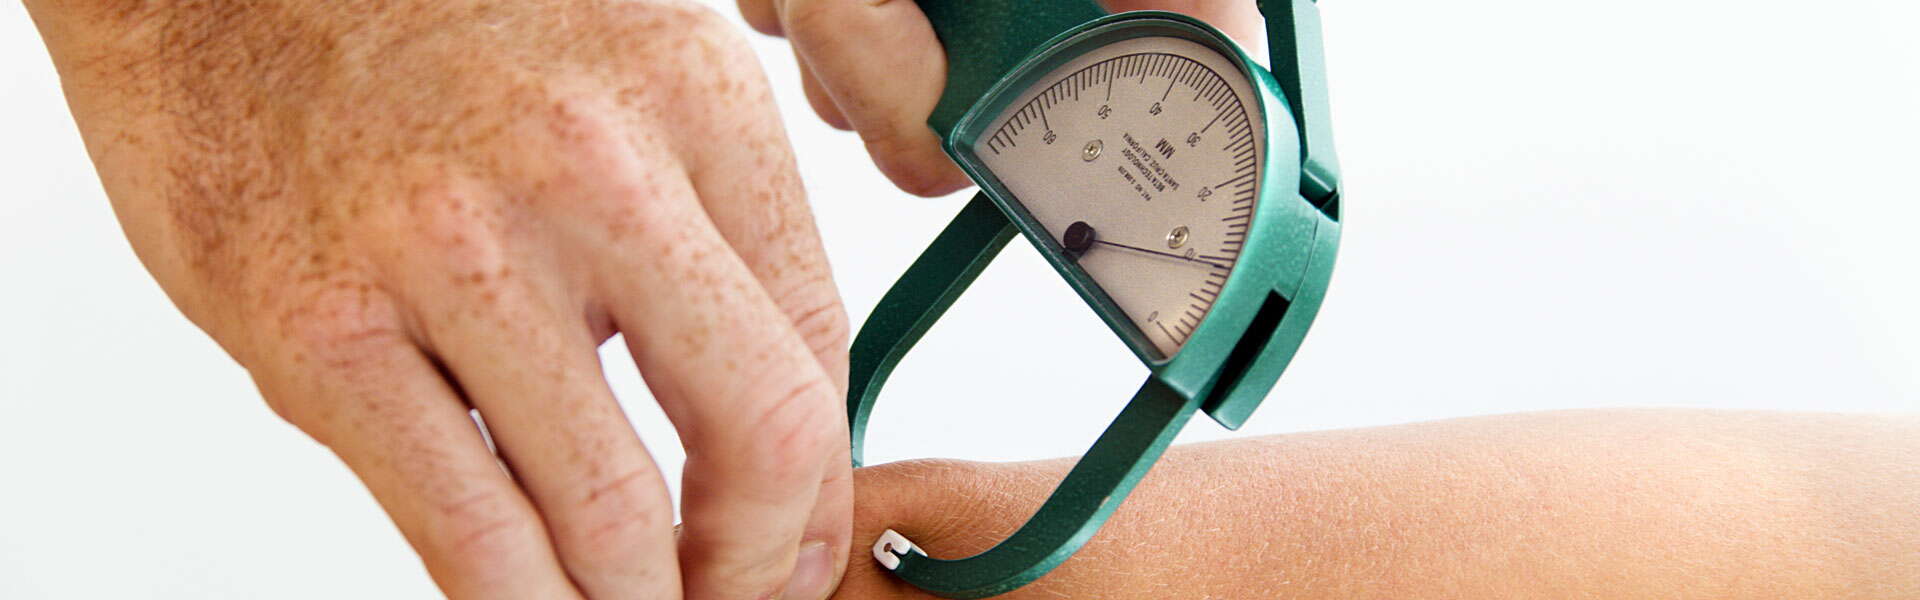 Metodi per la misurazione del grasso corporeo